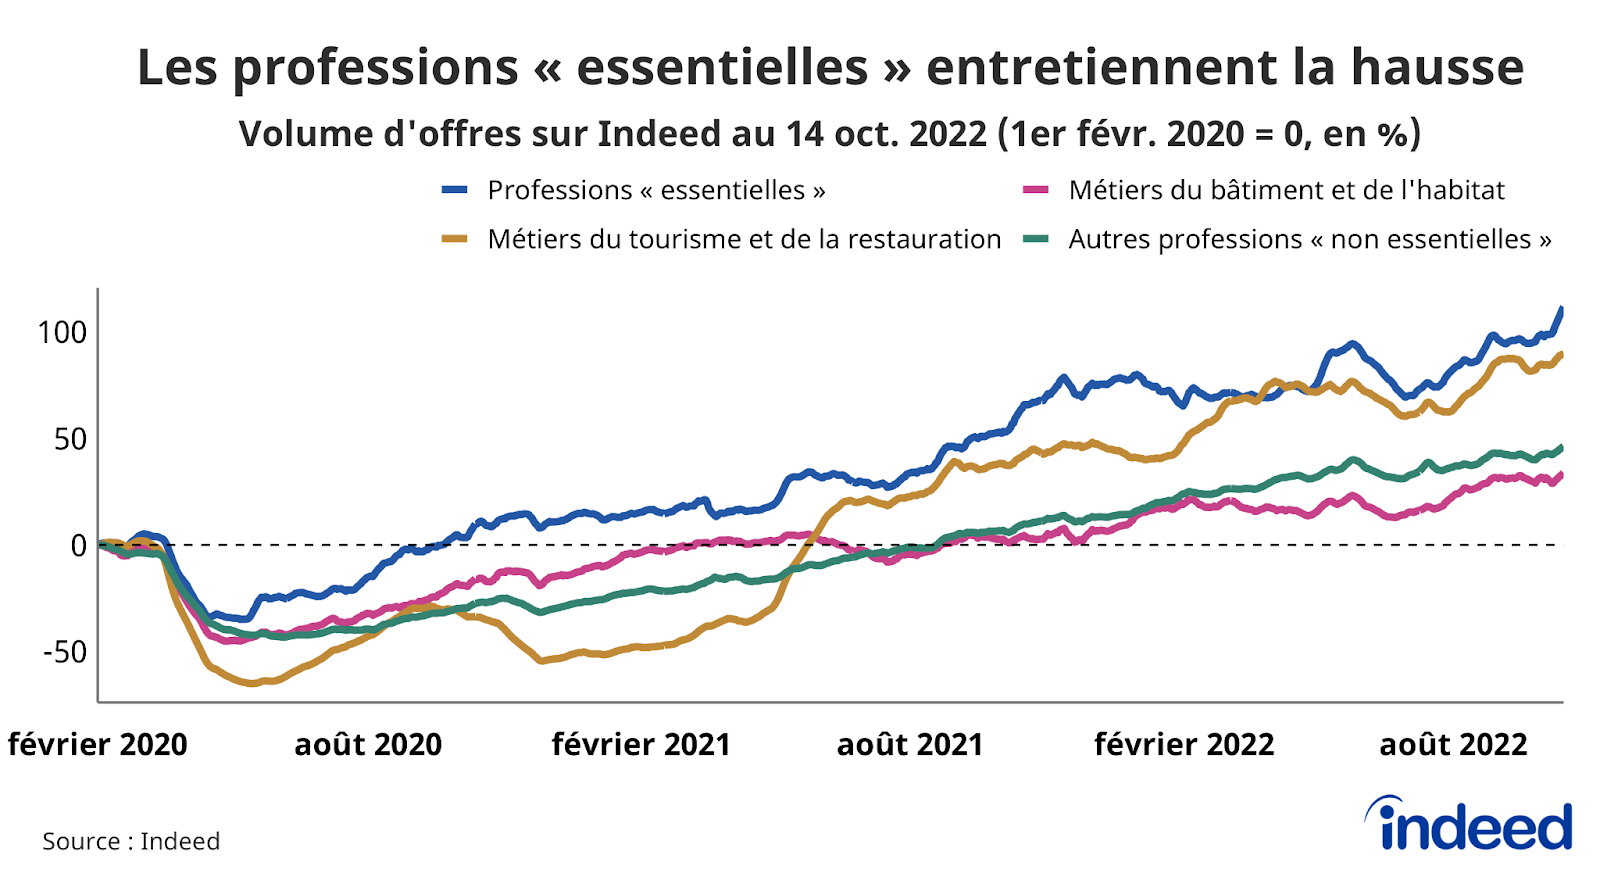 Le graphique en courbes illustre l’évolution, par rapport à la référence du 1er février 2020, du volume d’offres d’emploi (en abscisses) en fonction du temps (en ordonnées), jusqu’au 14 octobre 2022.